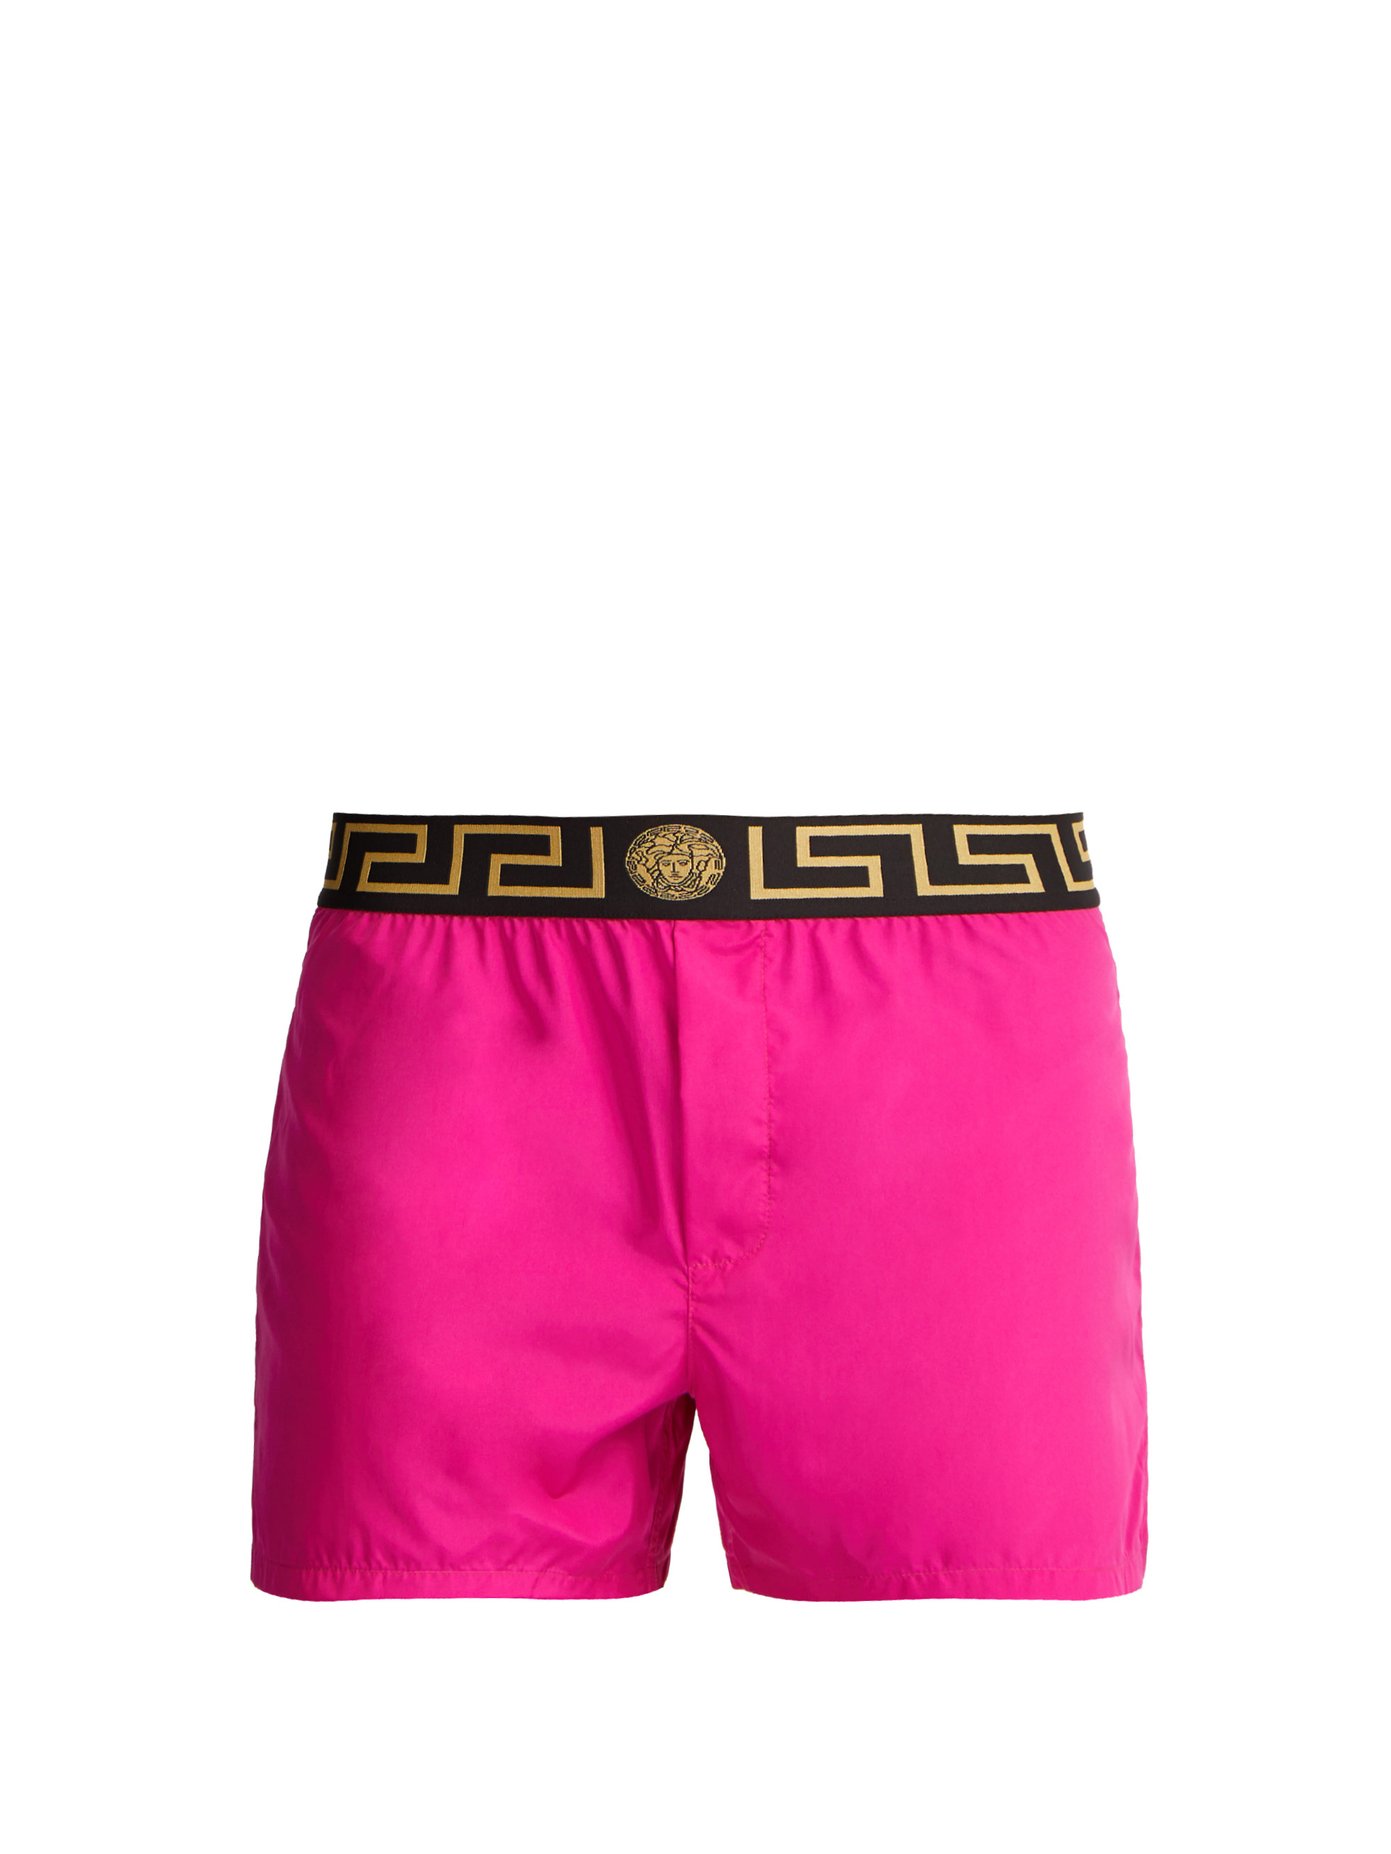 versace swim shorts uk